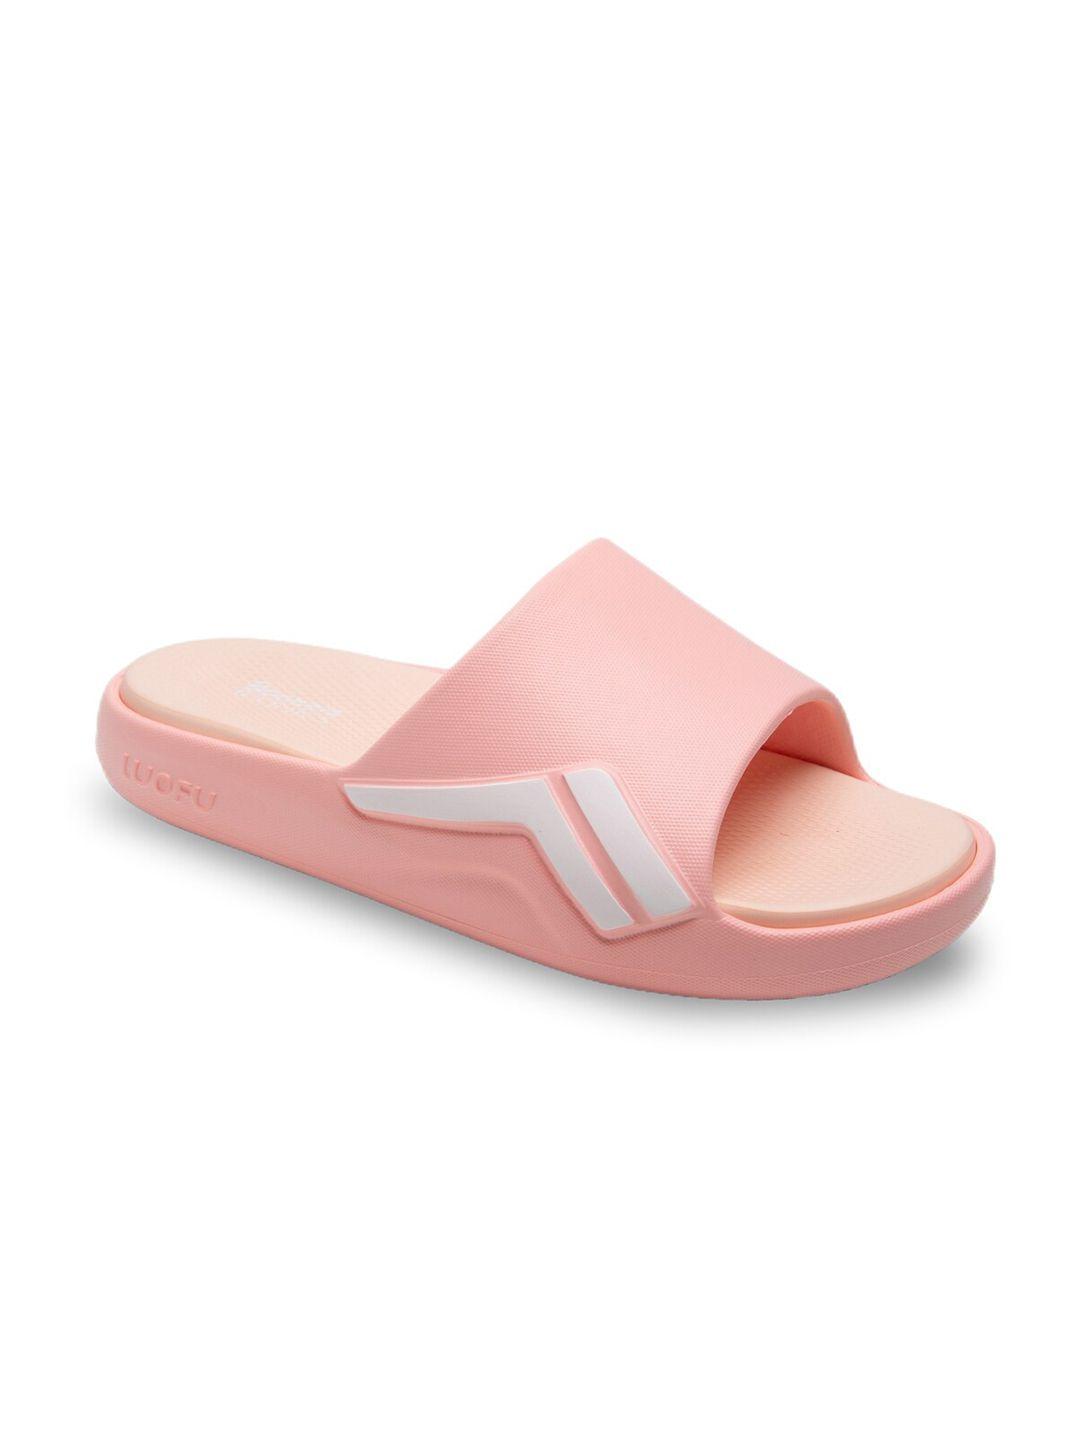 bonkerz-women-white-&-pink-croslite-sliders